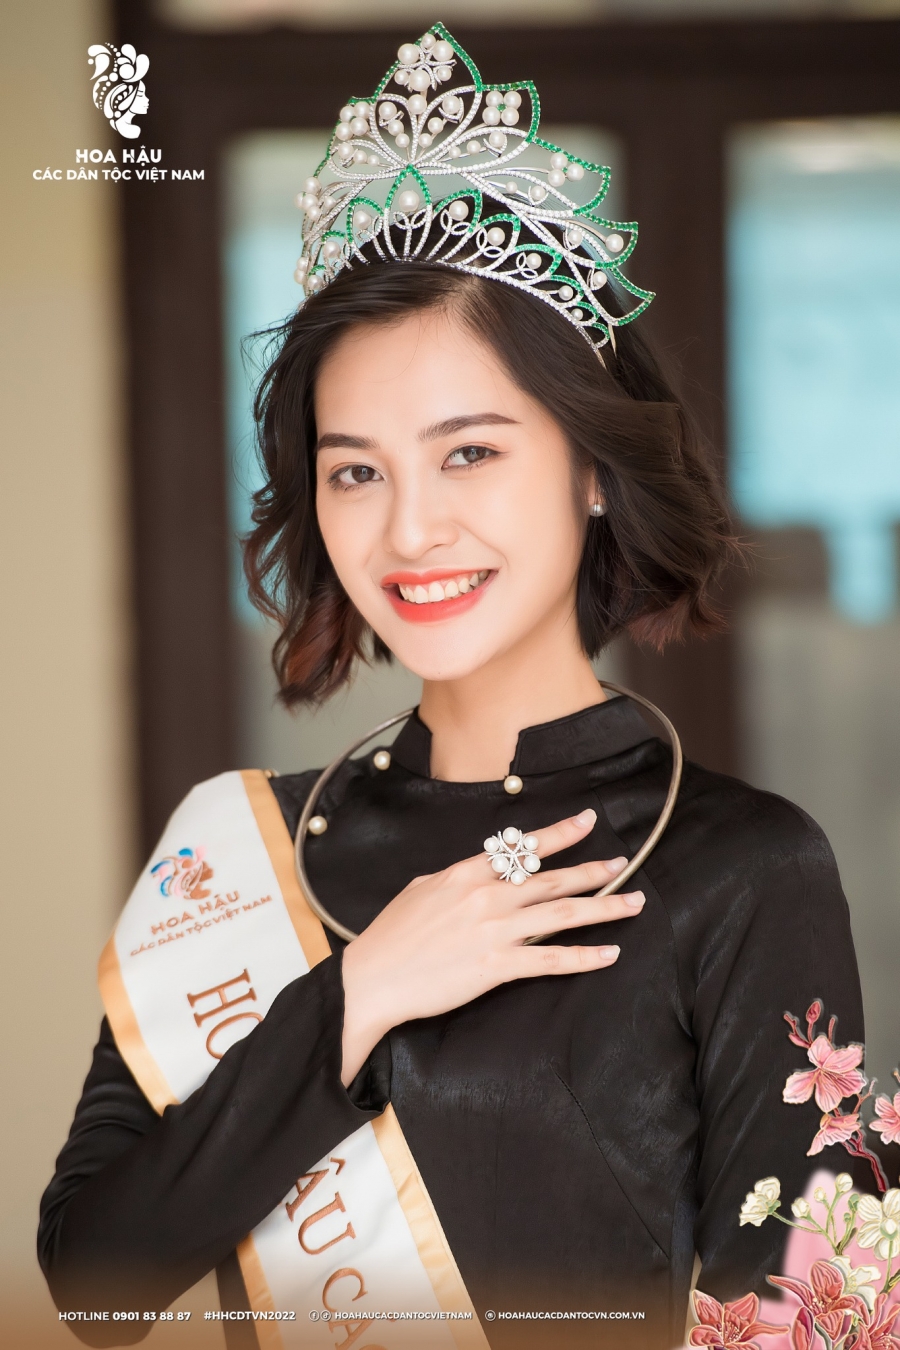 Hoa hậu Nông Thúy Hằng được người dân quê nhà vây kín hậu ồn ào bị ghẻ lạnh - Ảnh 3